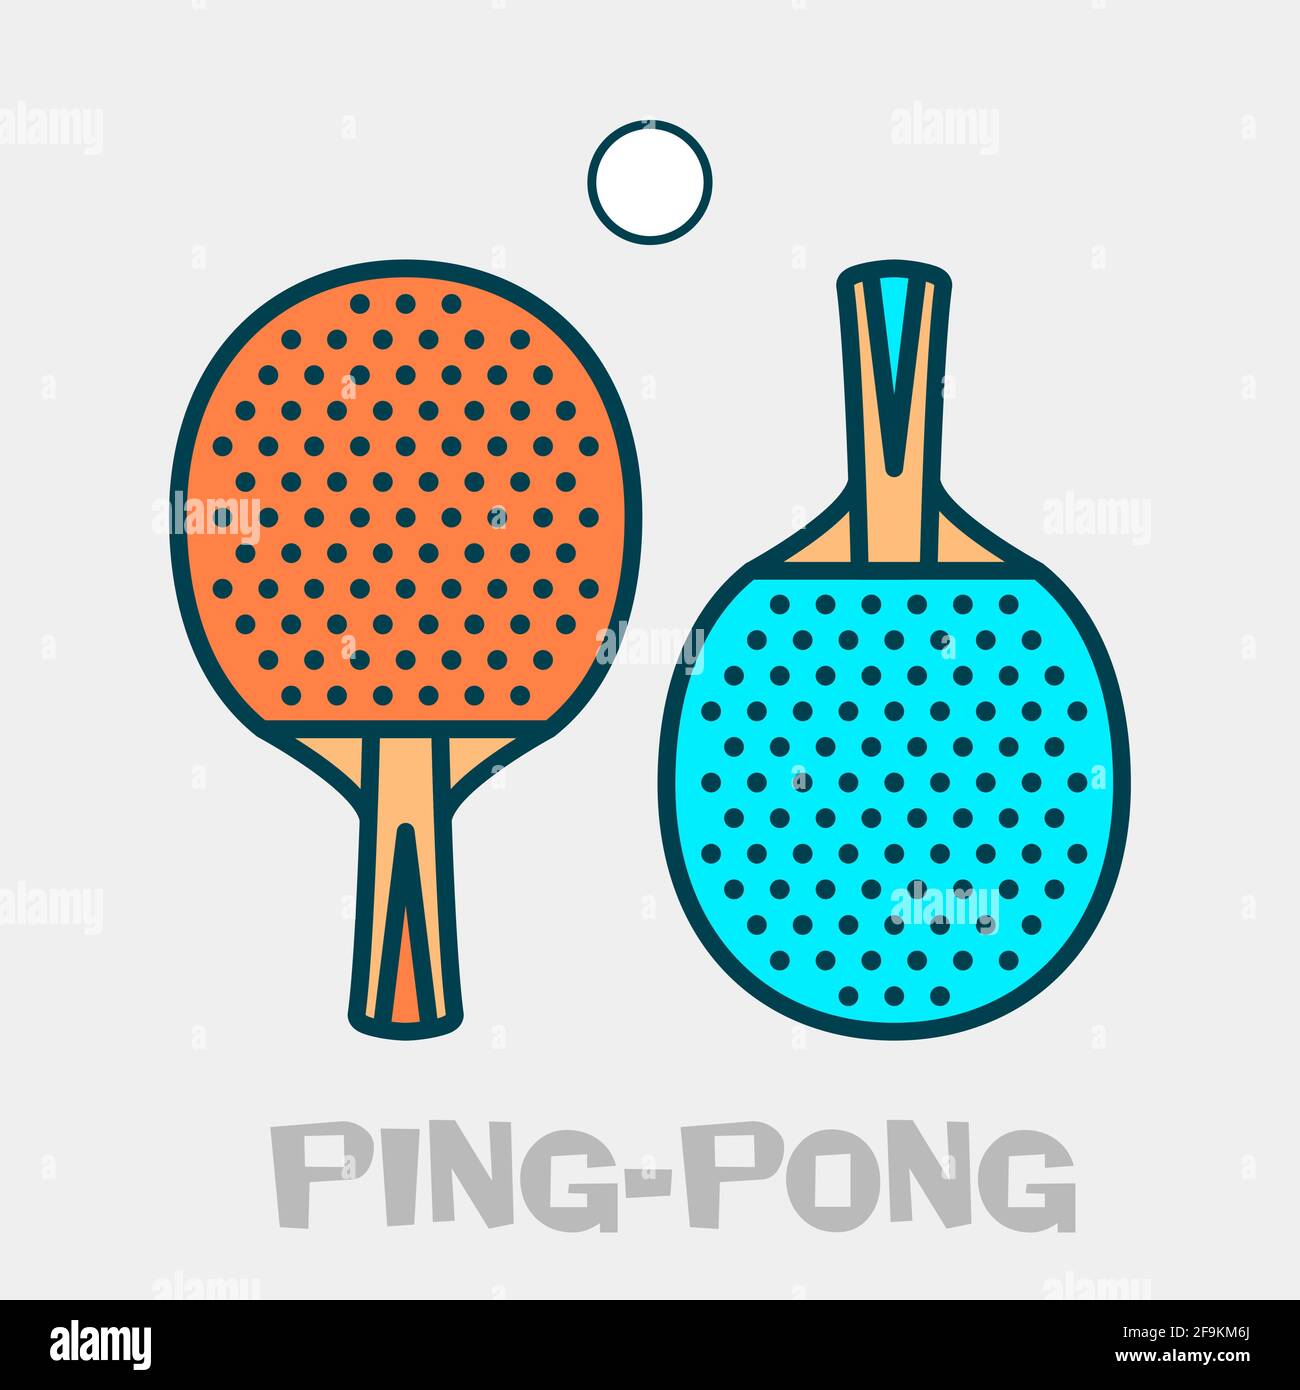 PING PONG PADDLES